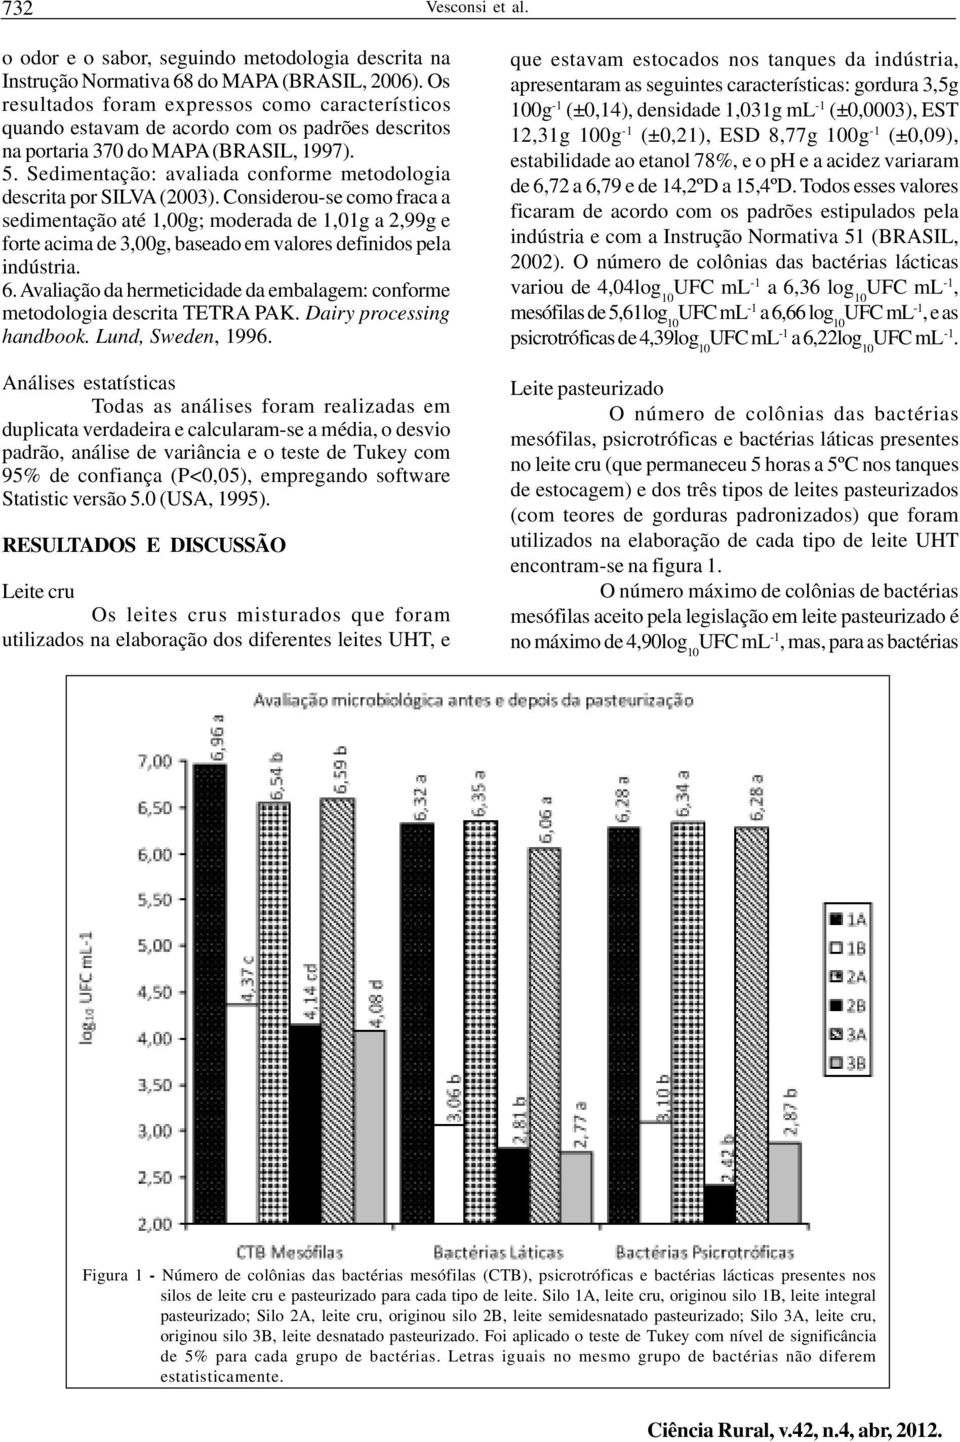 Sedimentação: avaliada conforme metodologia descrita por SILVA (2003).